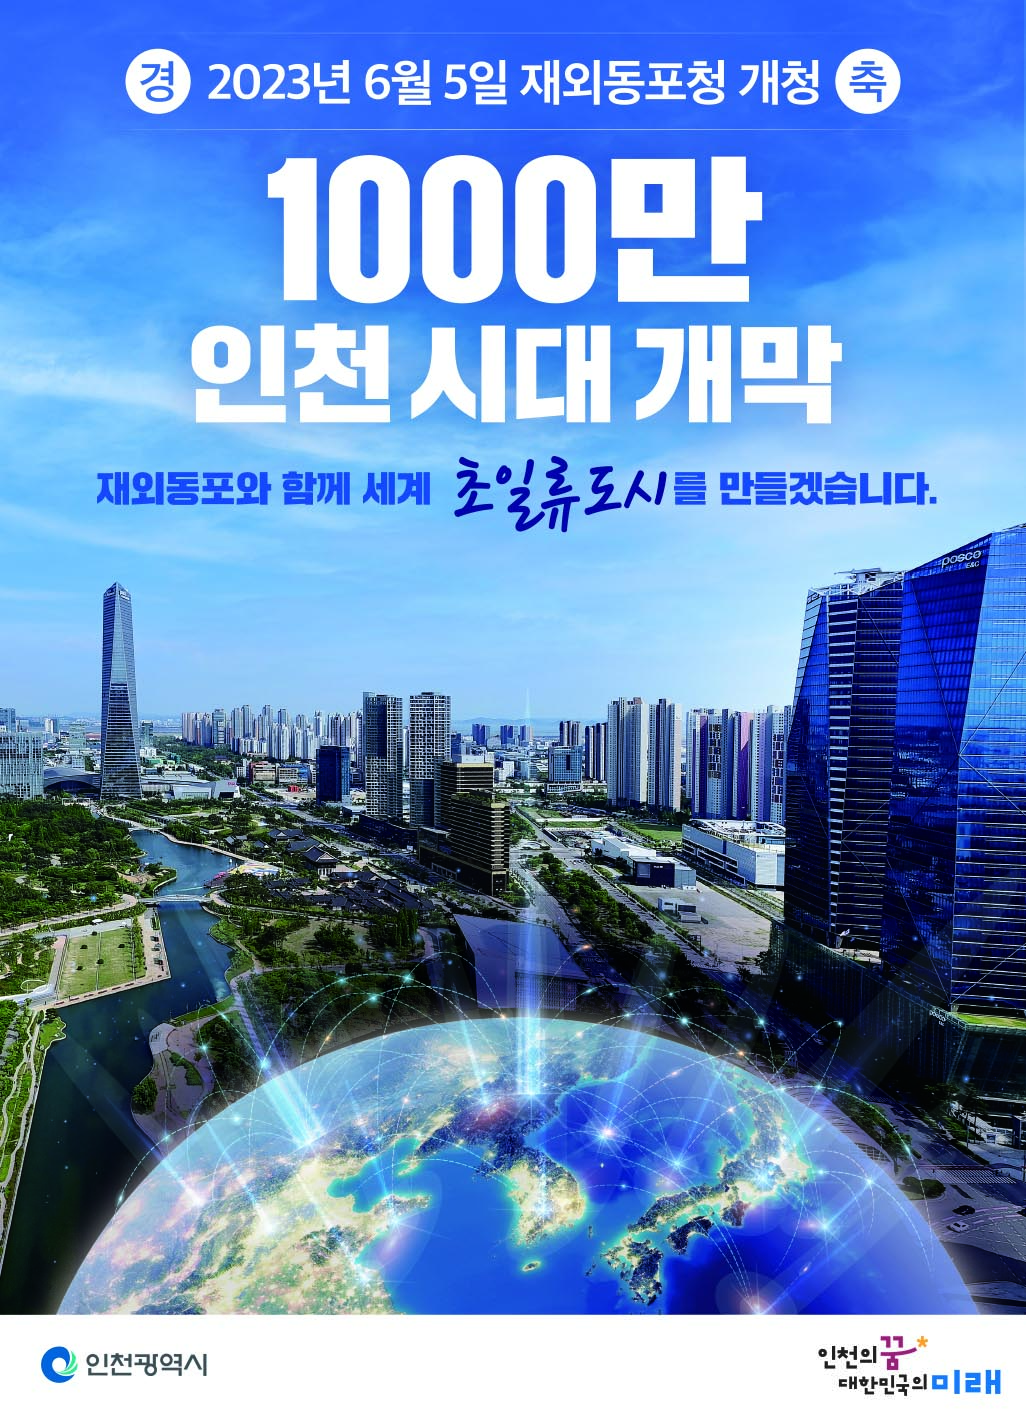 1000만 인천시대 개막
재외동포와 함께 세계 초일류도시를 만들겠습니다.